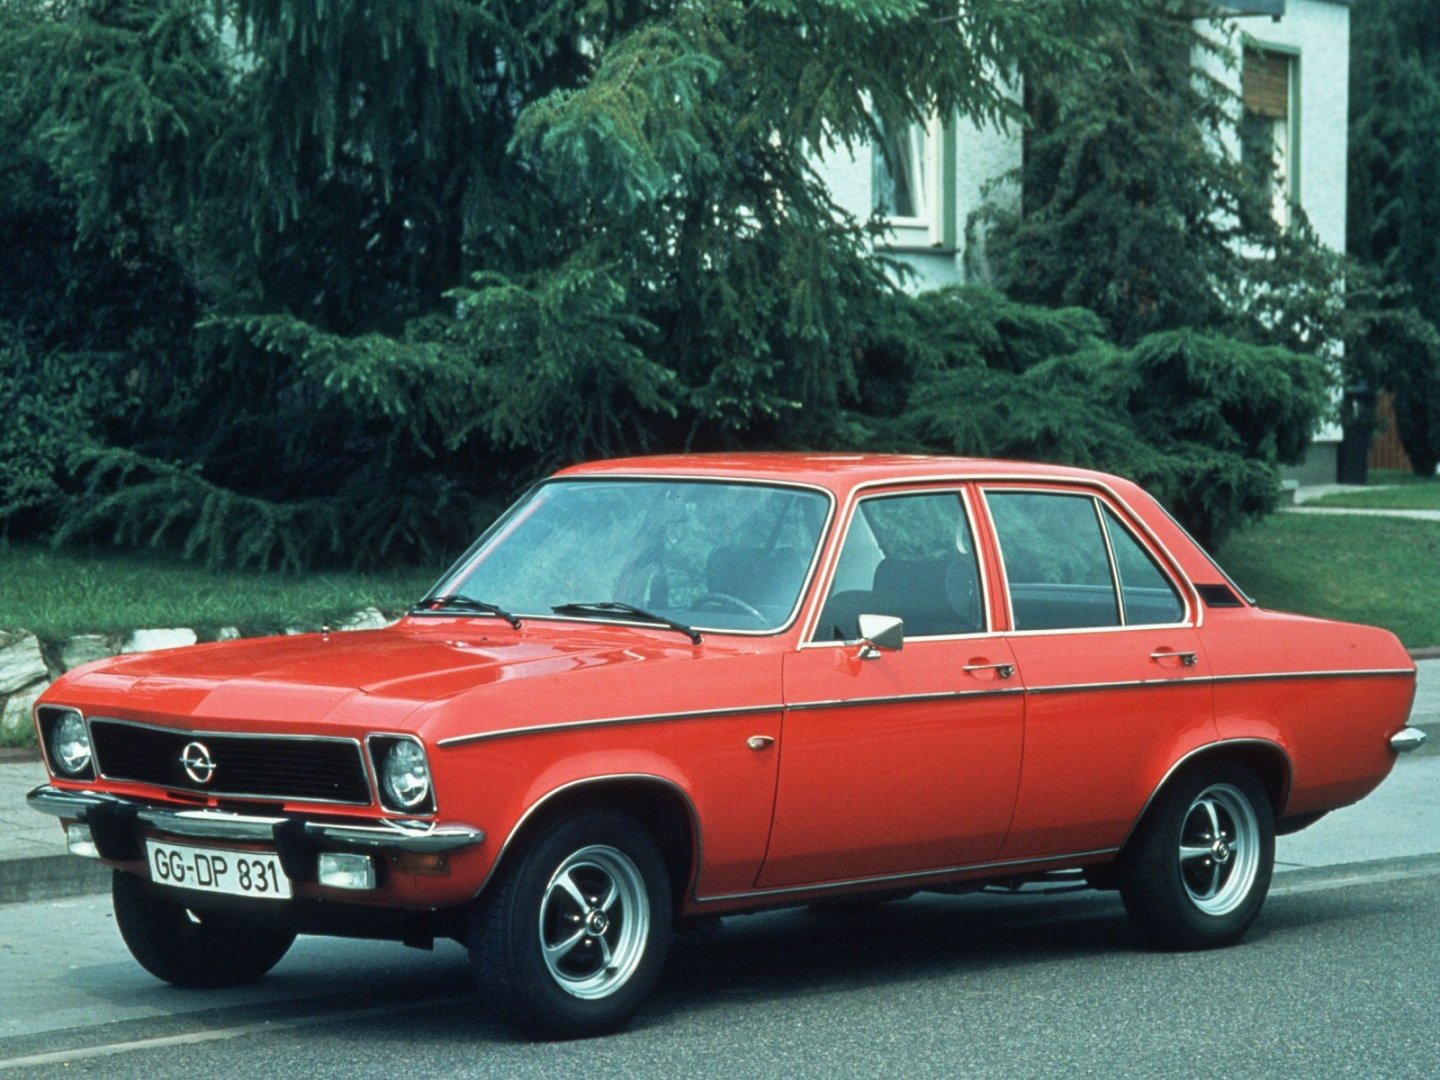 Ð¤Ð¾Ñ‚Ð¾Ð³Ñ€Ð°Ñ„Ð¸Ð¸ Ð°Ð²Ñ‚Ð¾Ð¼Ð¾Ð±Ð¸Ð»ÐµÐ¹ Opel Ascona / ÐžÐ¿ÐµÐ»ÑŒ ÐÑÐºÐ¾Ð½Ð° (1970 - 1975) Ð¡ÐµÐ´Ð°Ð½